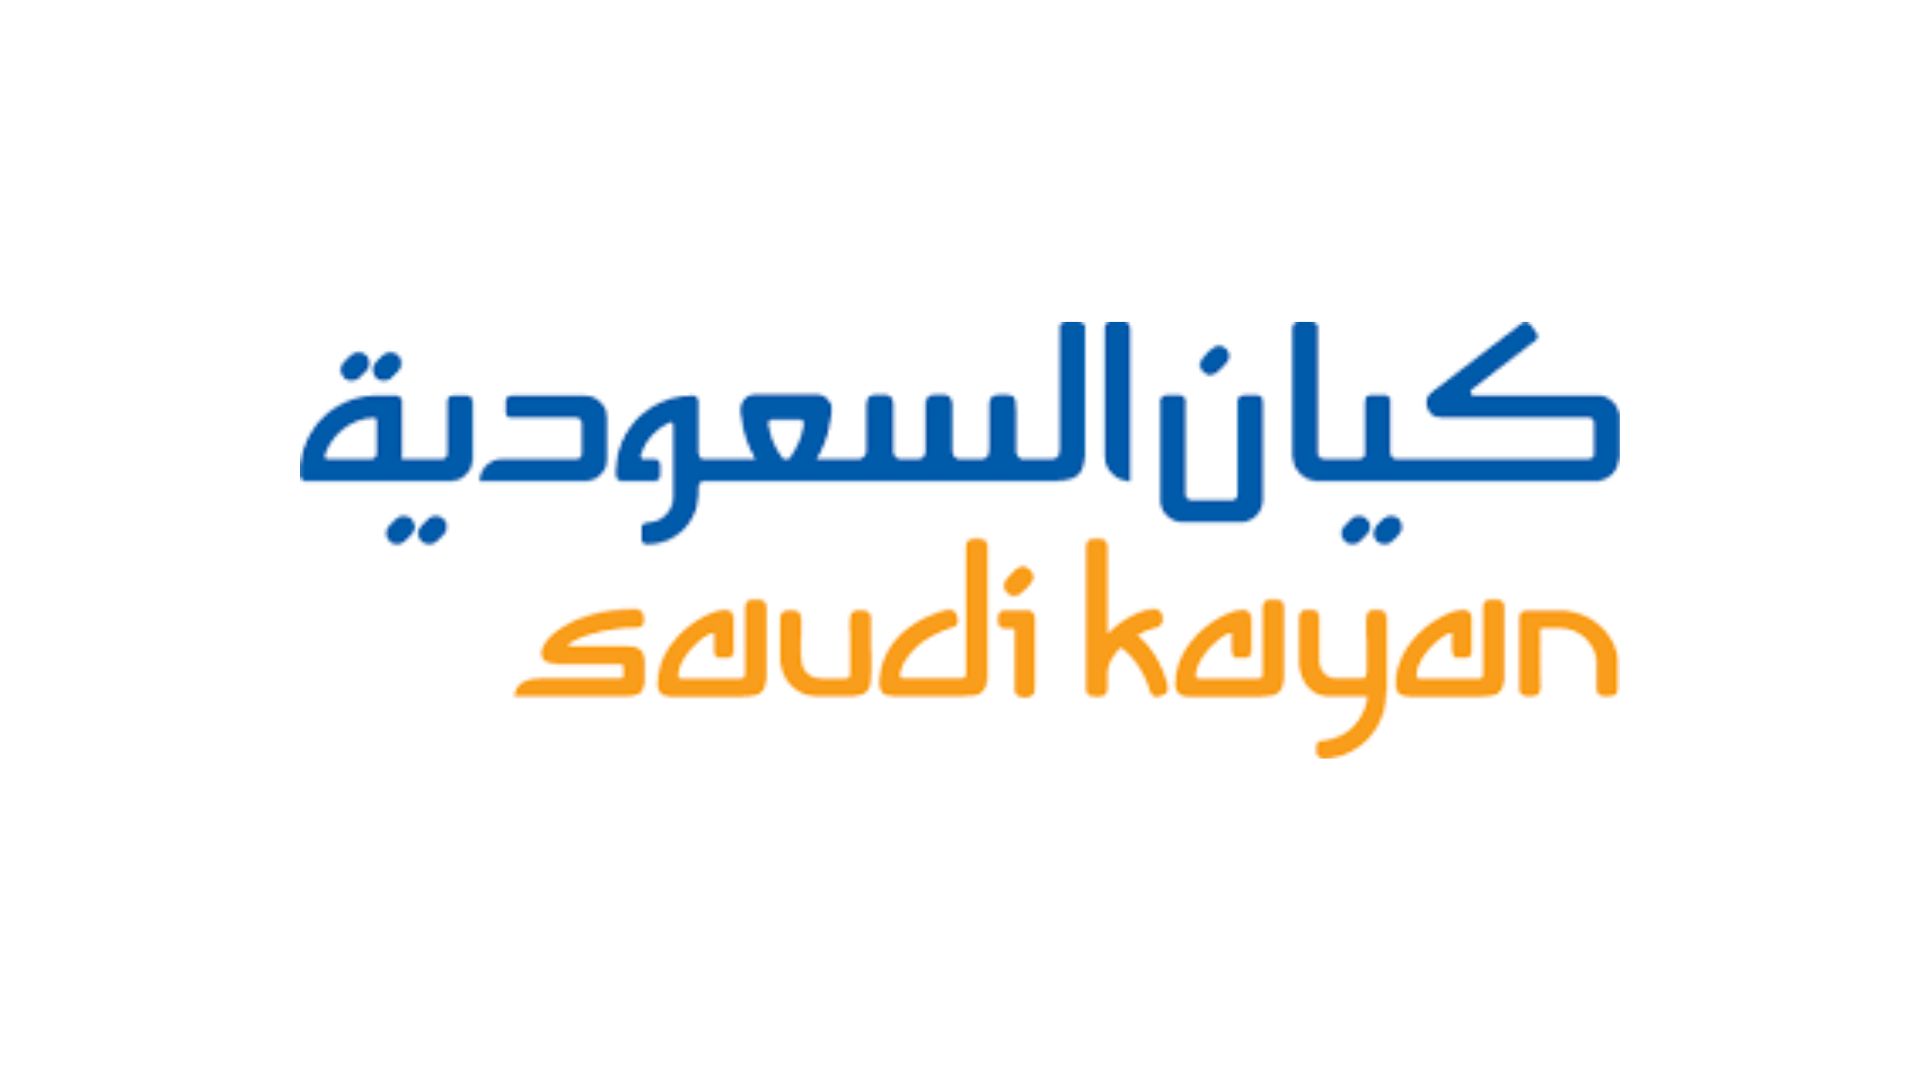 Saudi Kayan